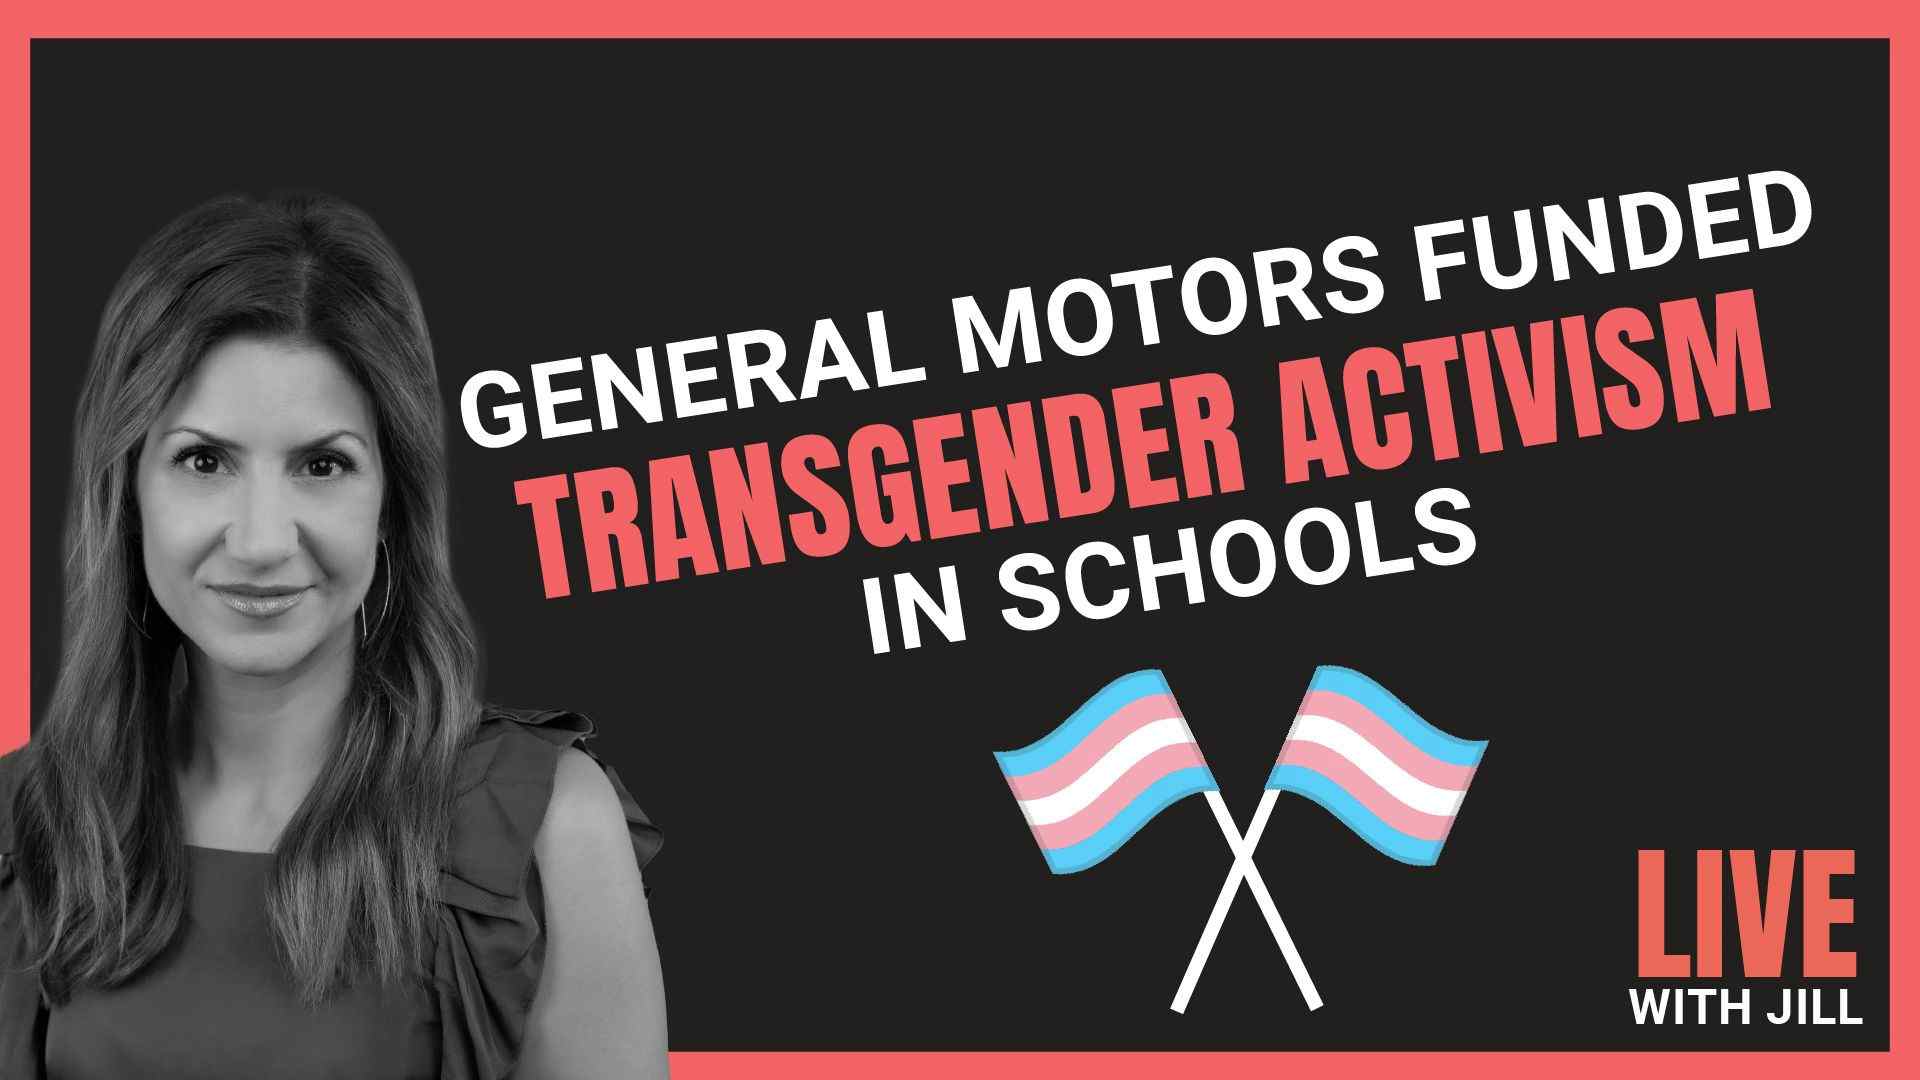 General Motors Funded Transgender Activism in Schools